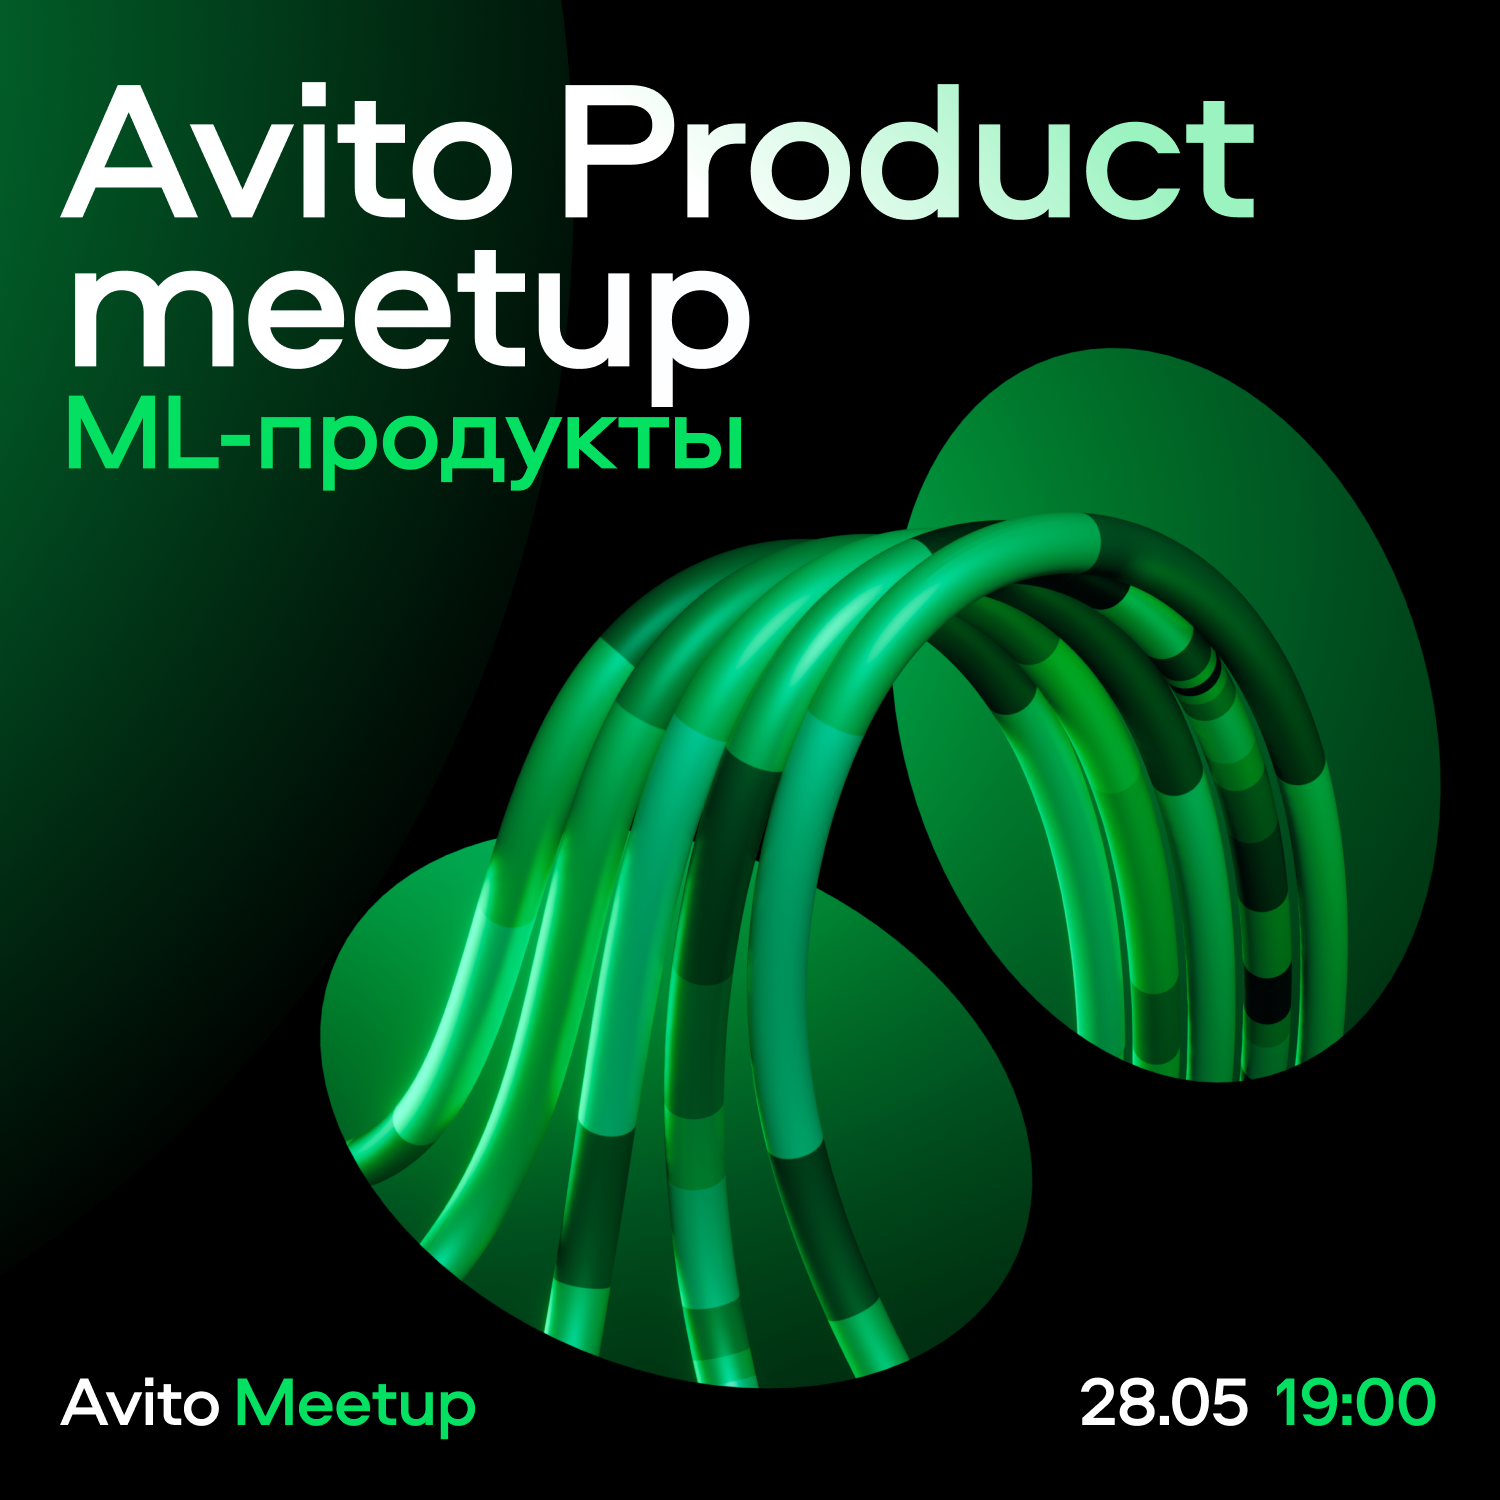 Обложка мероприятия Avito Product meetup: ML-продукты